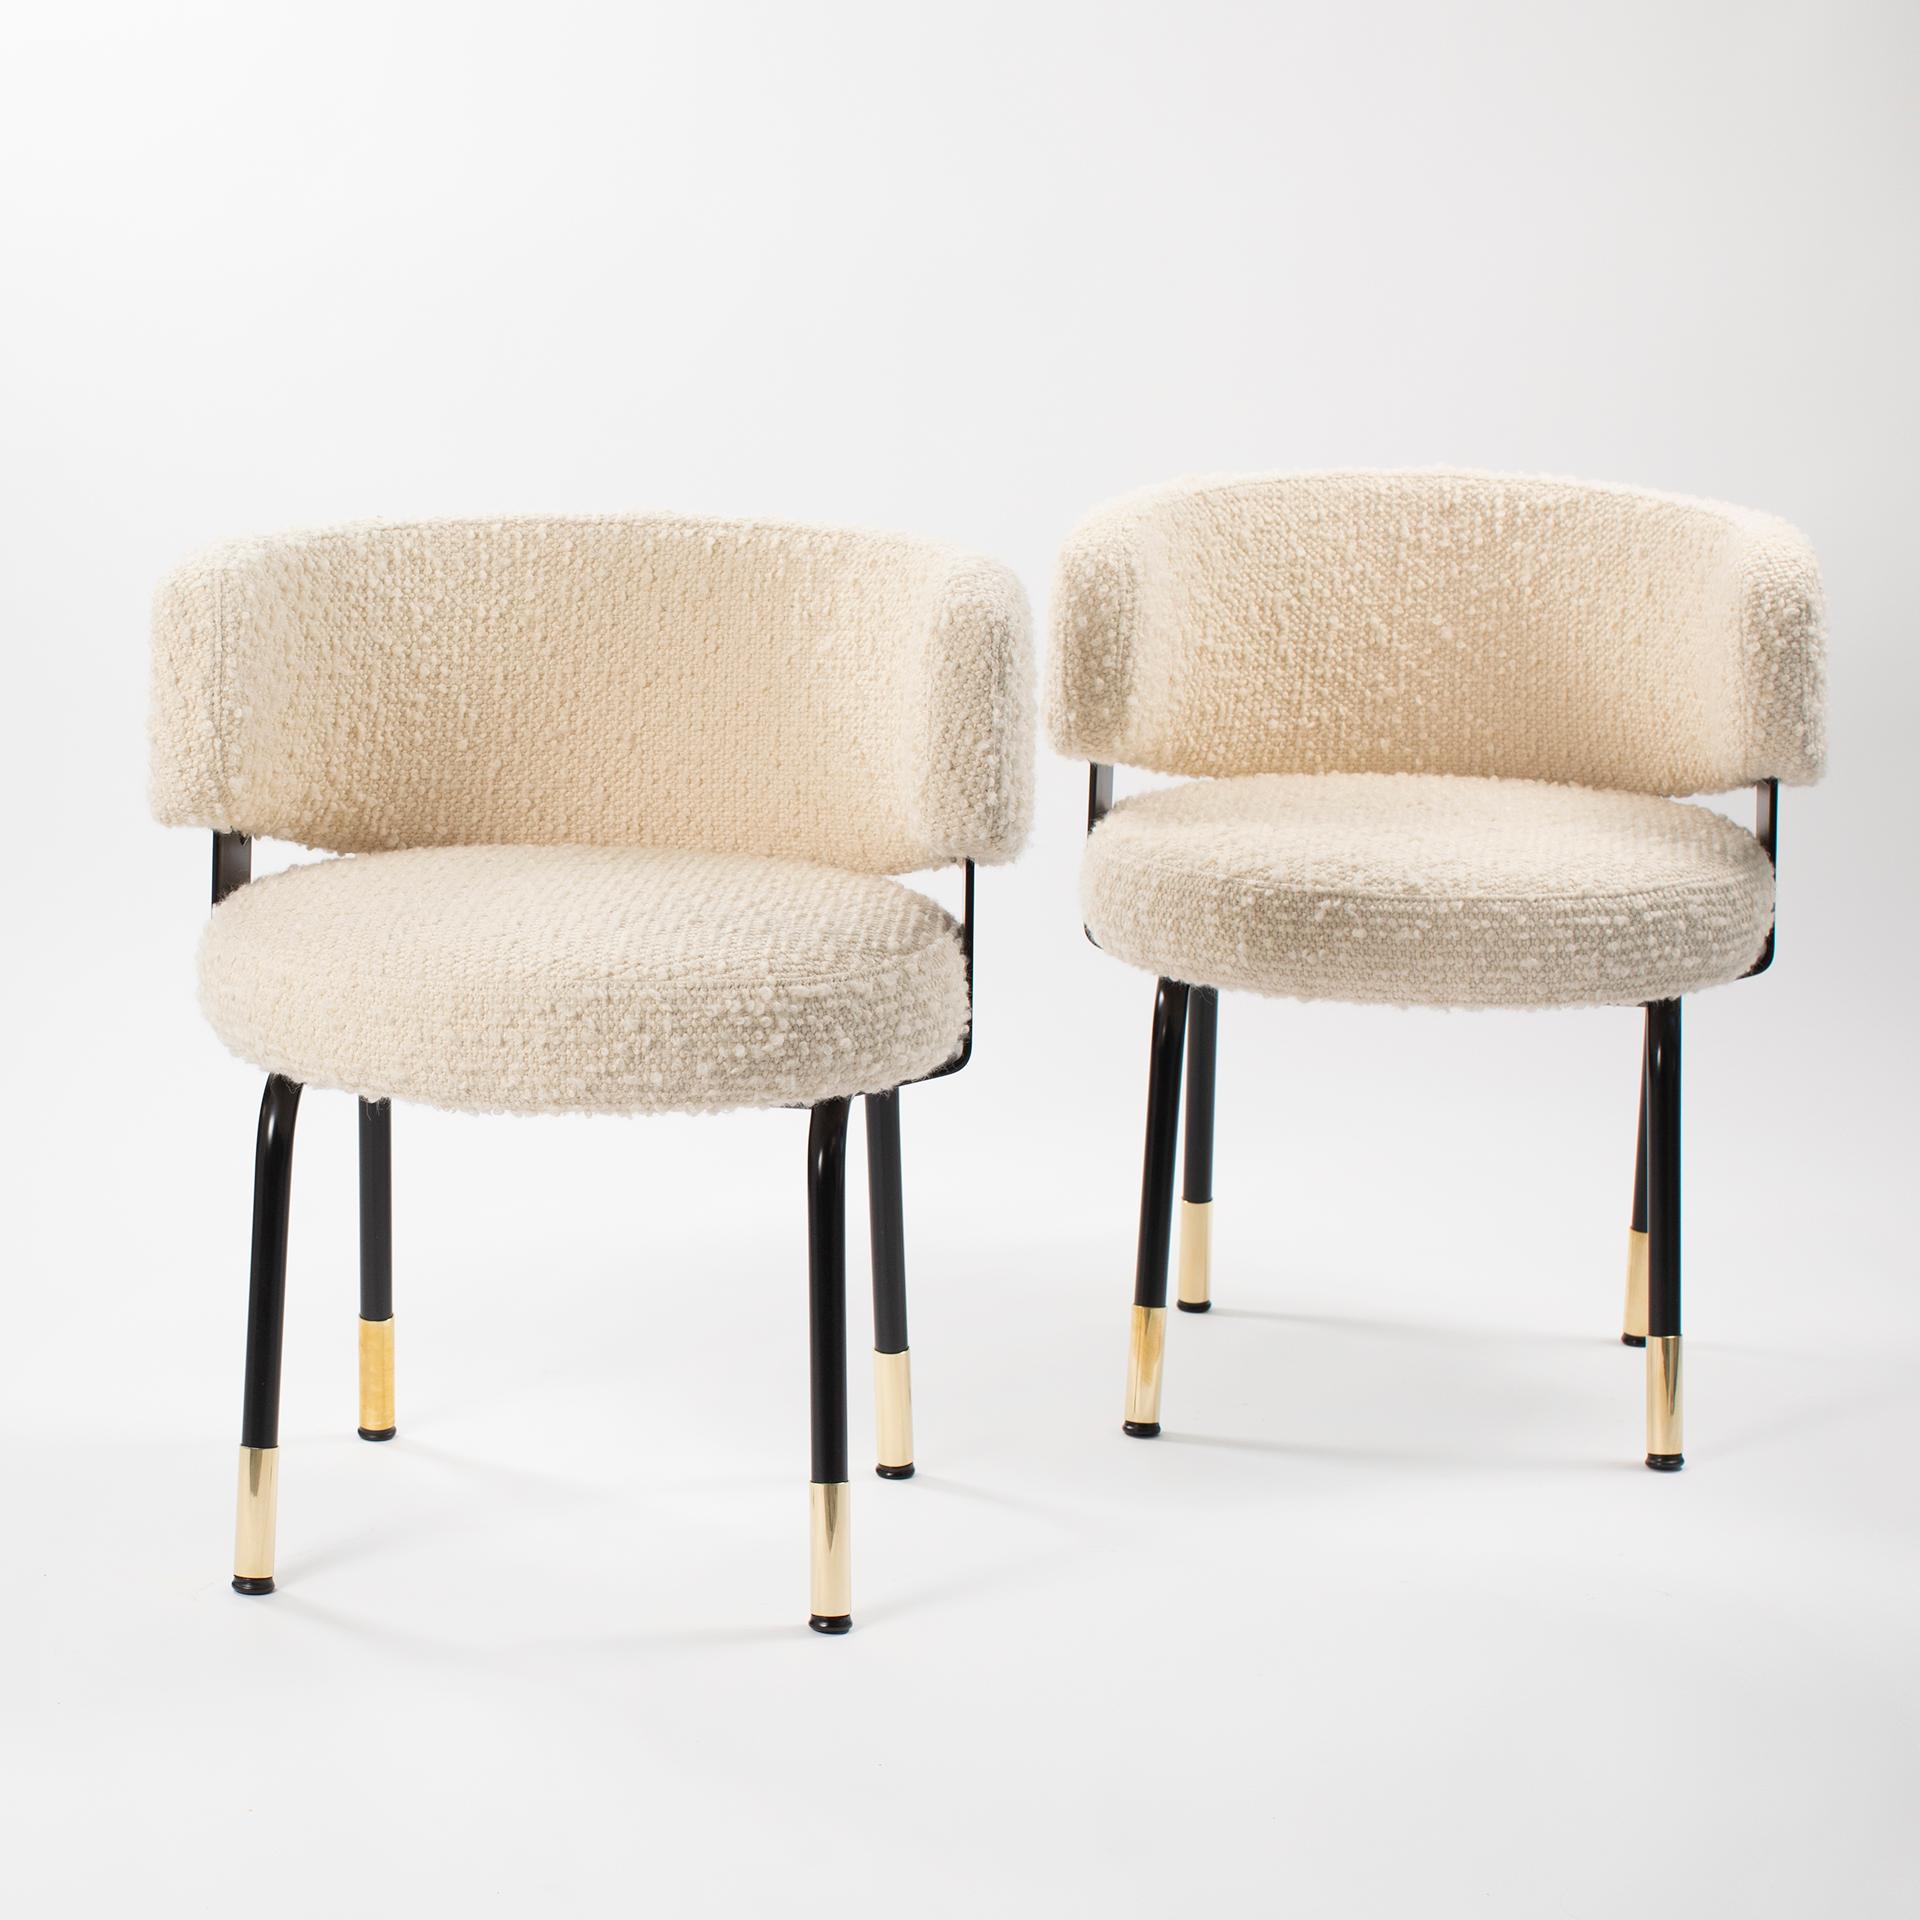 Zwei extravagante schwarz-weiße Formanova-Sessel mit Bouclé-Stoffbezug Italien 1970er Jahre.

Formal sehr reifes Sesselpaar der Firma FORMANOVA.
Die abgerundete und gut gepolsterte Rückenlehne und die runde, leicht geschwungene Sitzfläche verleihen